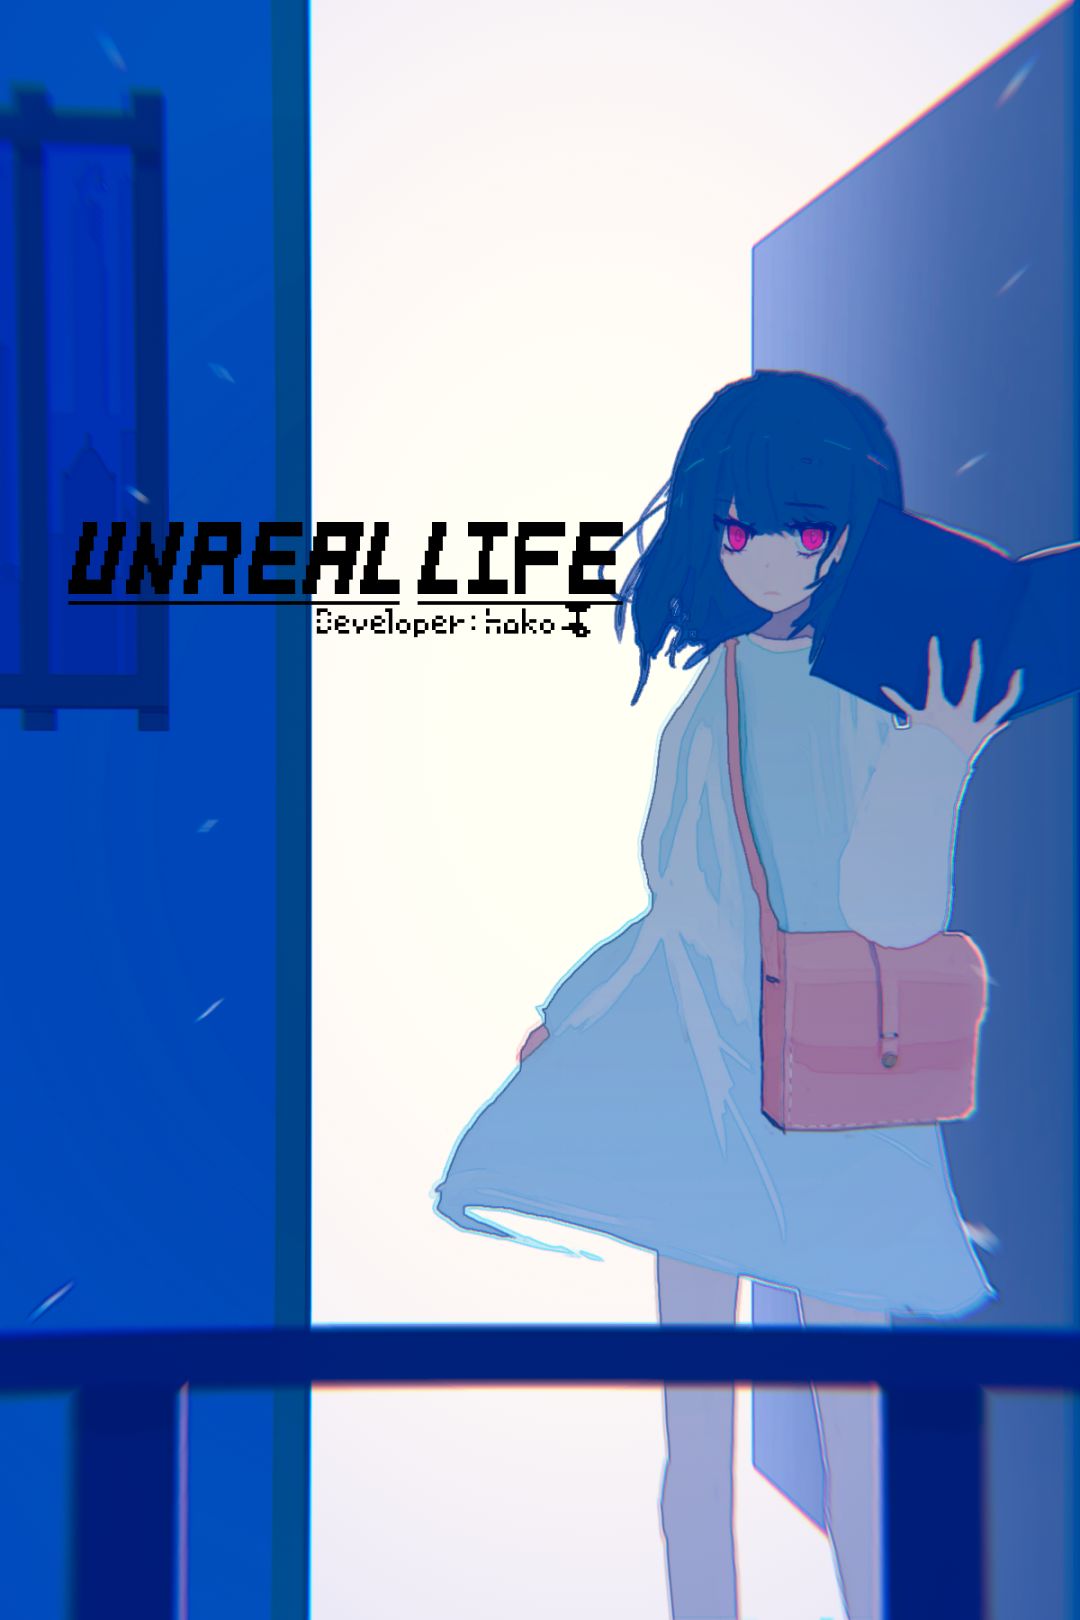 【PC遊戲】一個關於救贖的故事《unreallife》